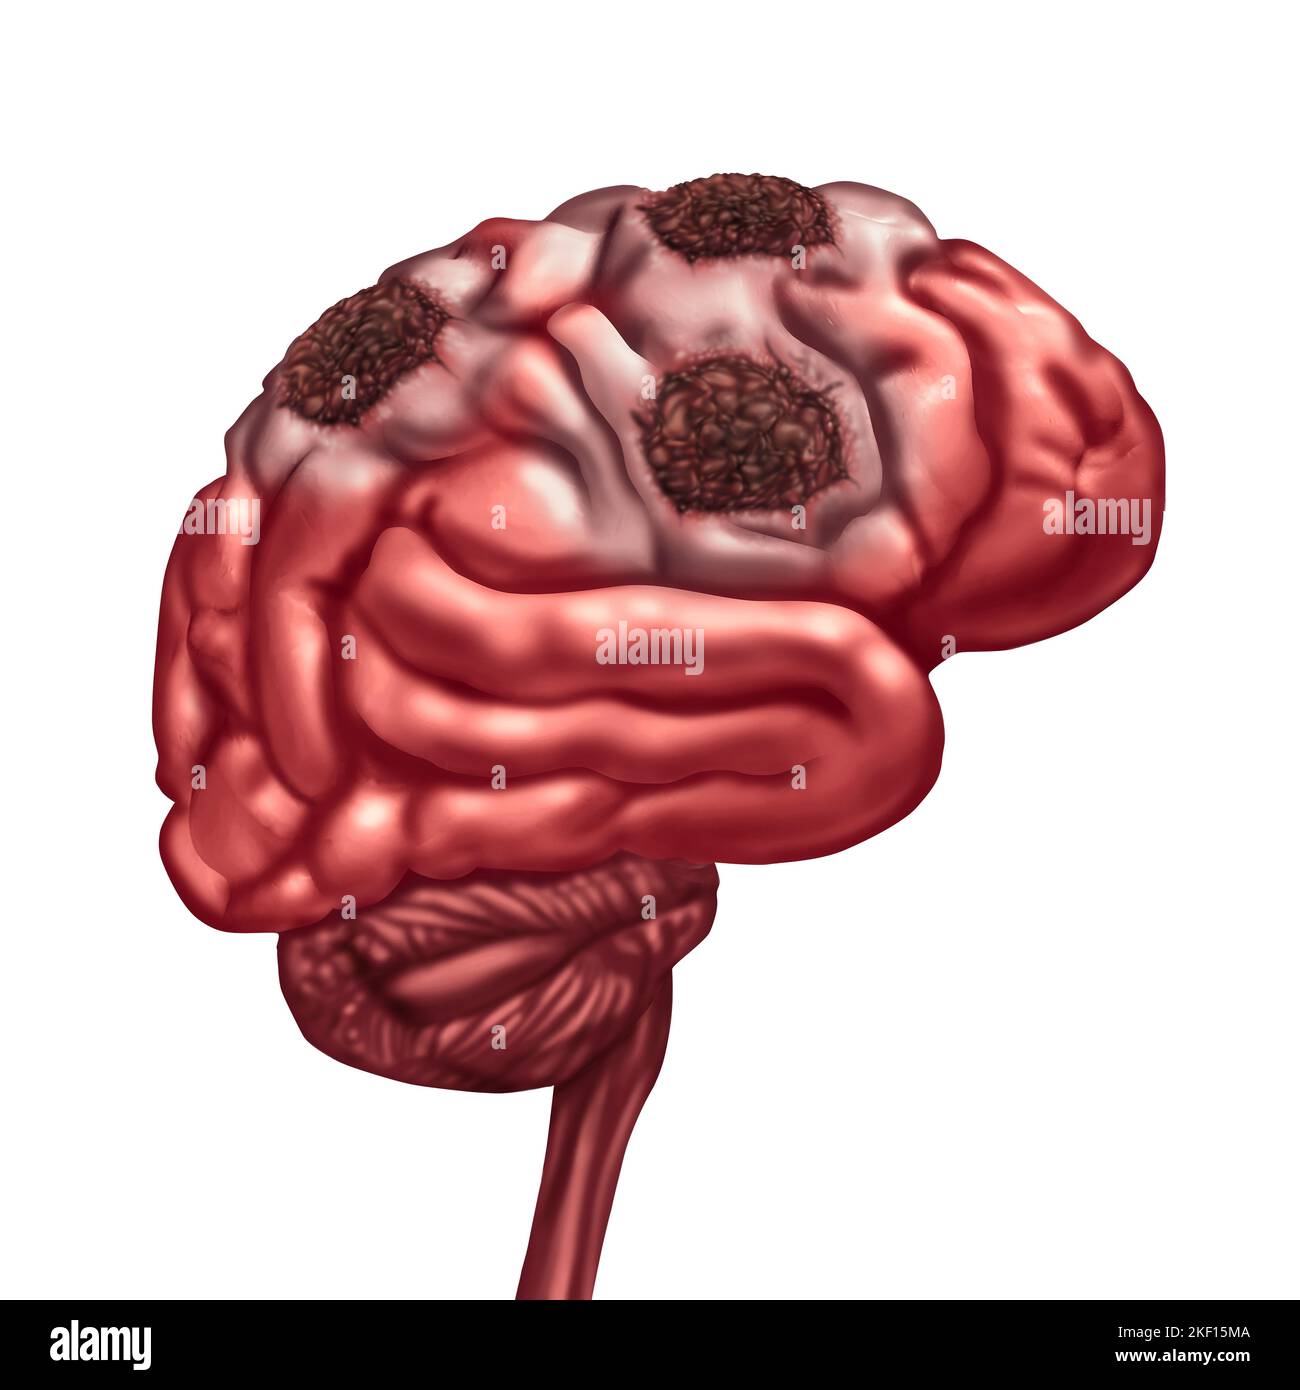 Cerveau nécrose liquefactive due à la perte de la circulation sanguine dans l'esprit après un accident vasculaire cérébral causé par le blocage des artères entraînant des dommages aux tissus morts Banque D'Images